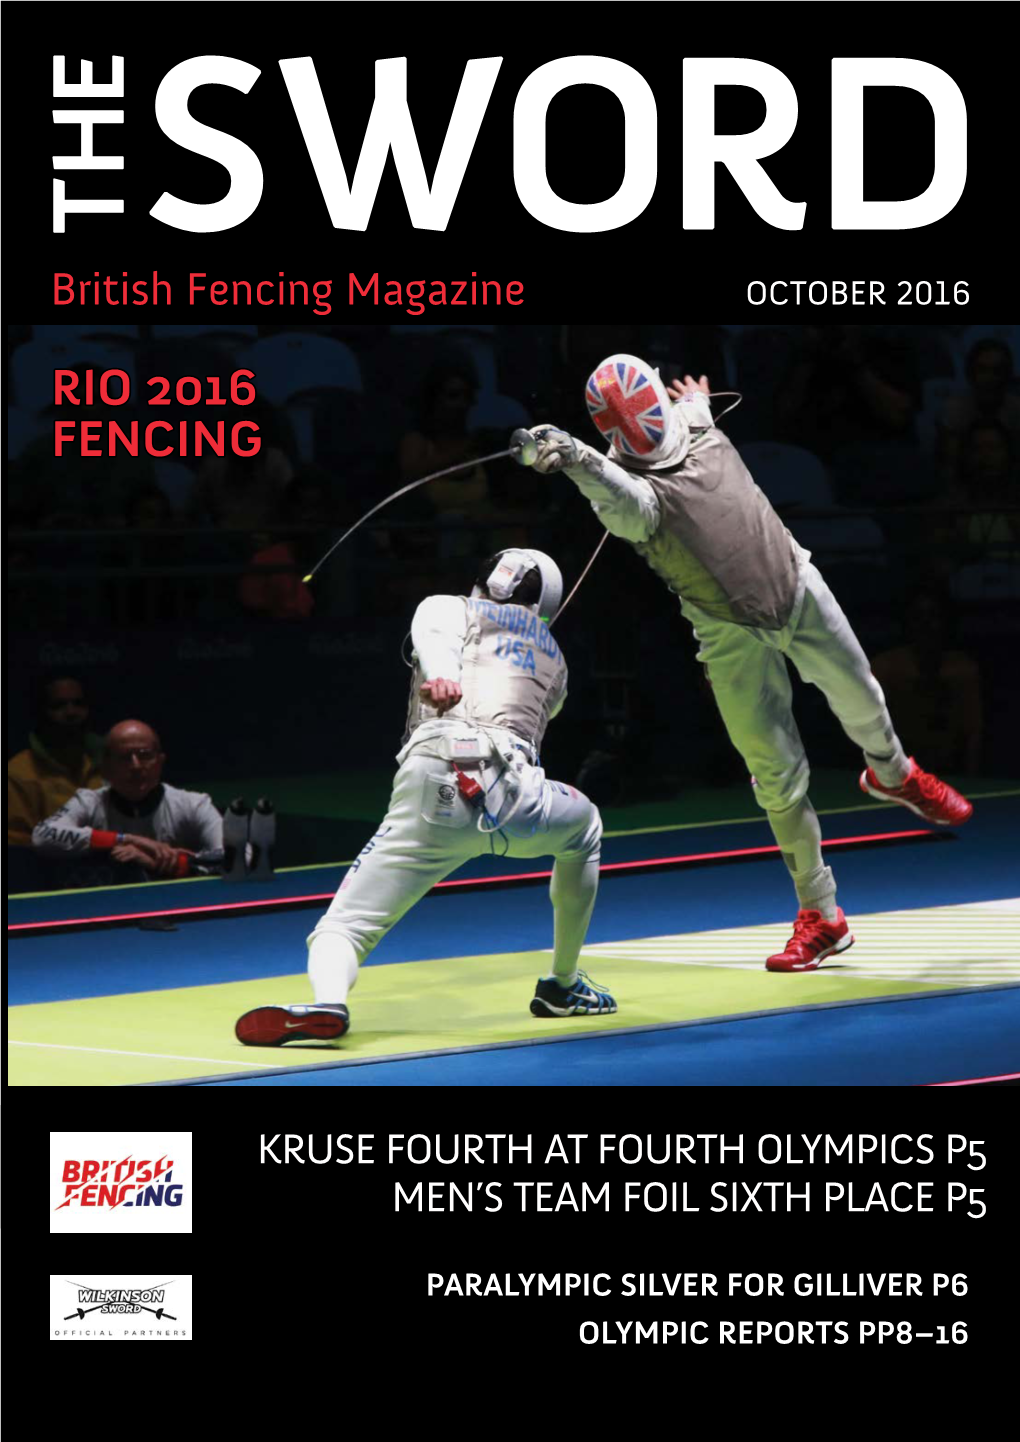 Rio 2016 Fencing